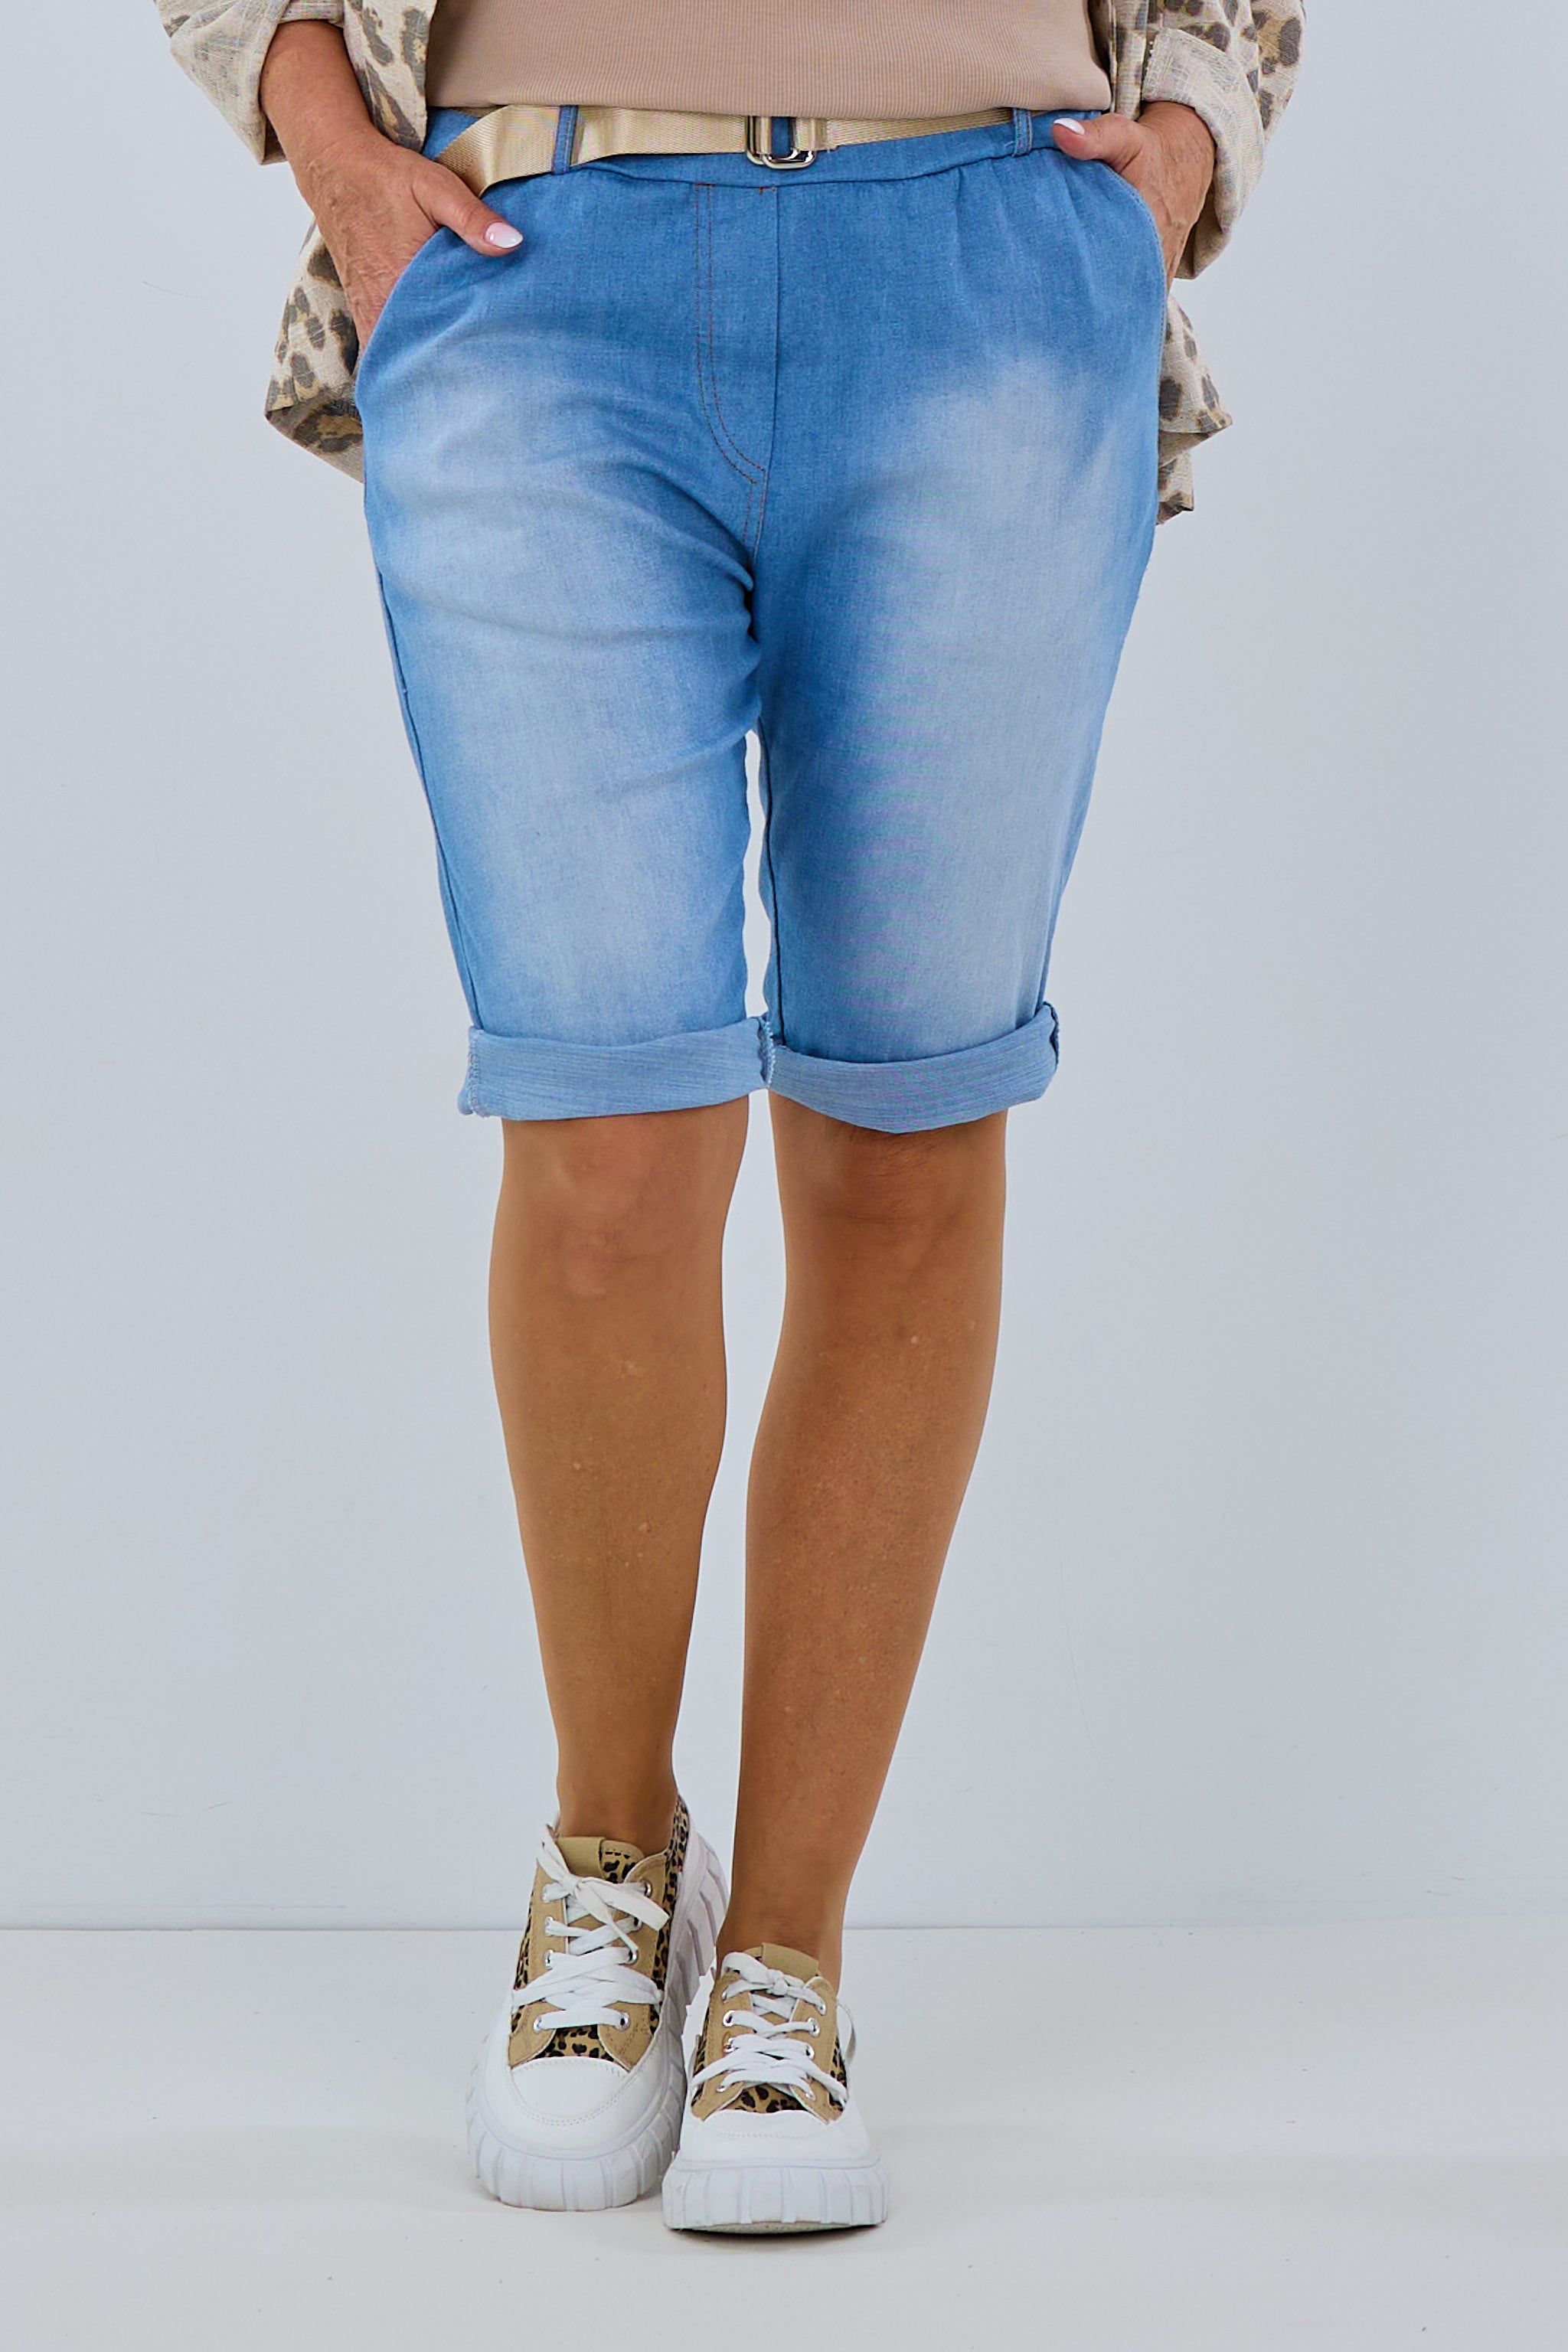 Jeans Short mit Gürtel denim blue von Trends & Lifestyle